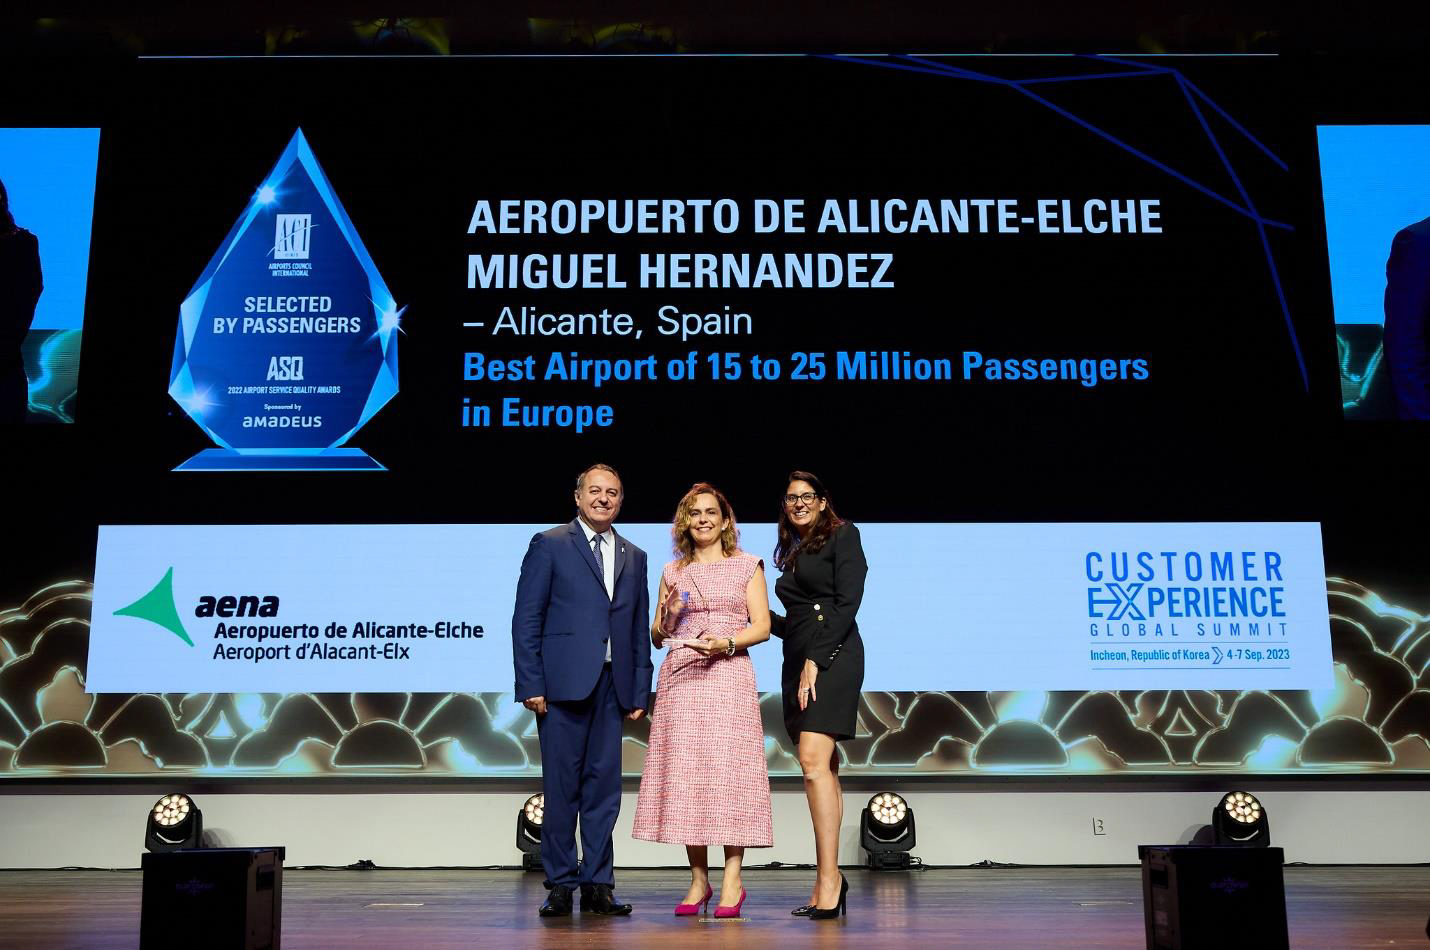 La directora del Aeropuerto de Alicante-Elche Miguel Hernández recoge el premio a «Mejor Aeropuerto de Europa» otorgado por el Consejo Internacional de Aeropuerto (ACI) el 6 de septiembre en Incheon, Corea. FOTO: AENA.